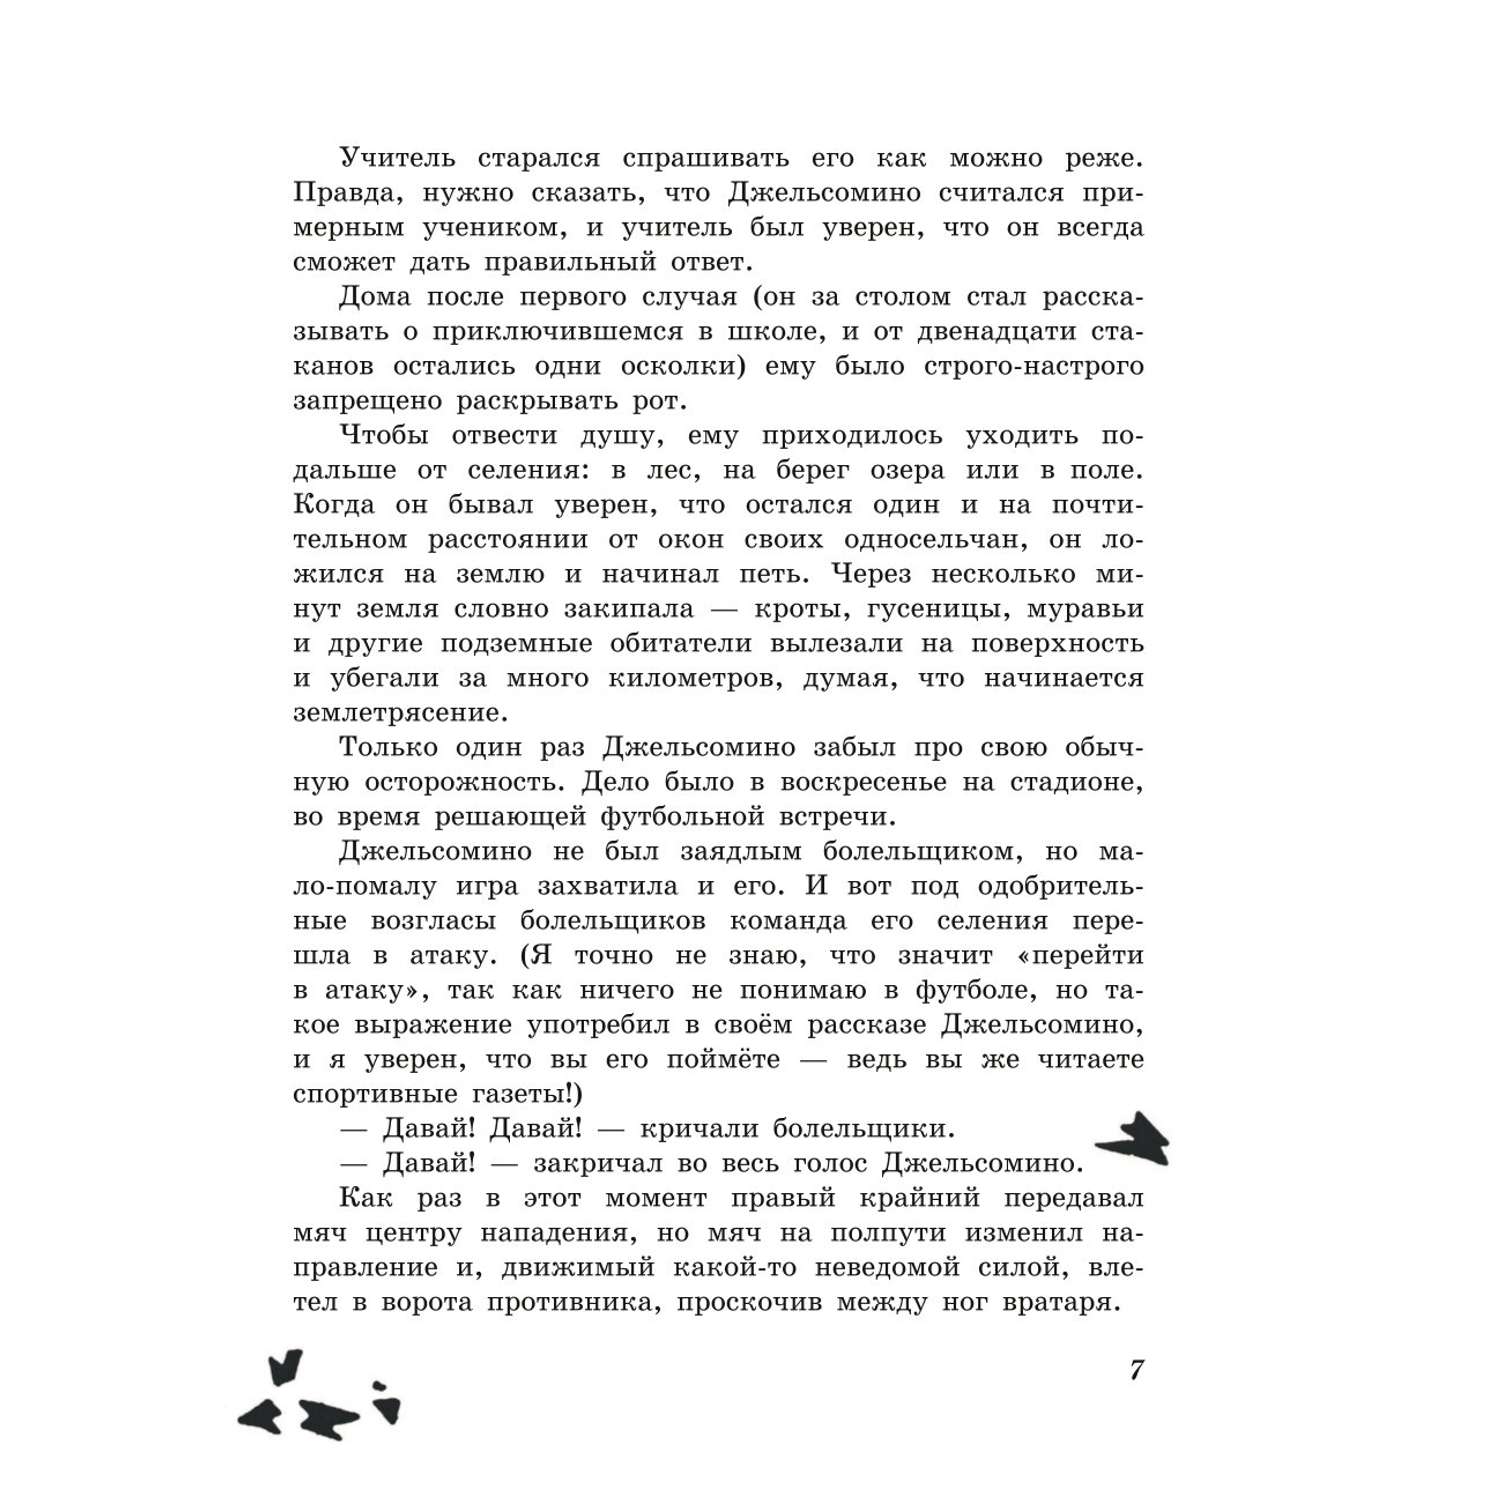 Книга Эксмо Джельсомино в Стране лжецов иллюстрации Вердини перевод Махова - фото 6